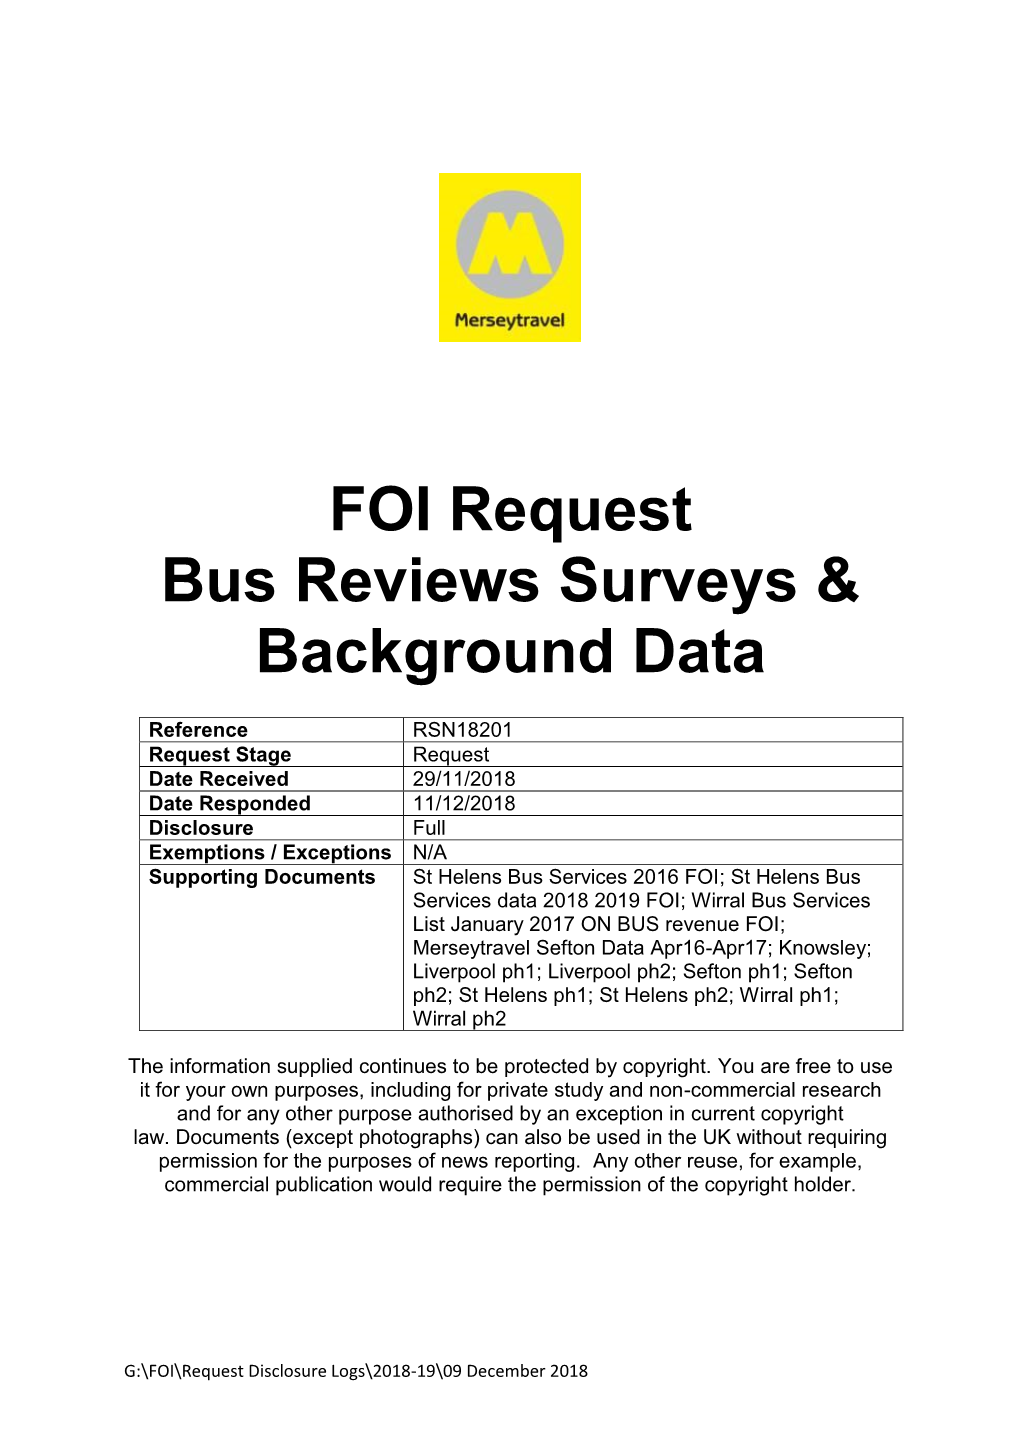 FOI Request Bus Reviews Surveys & Background Data